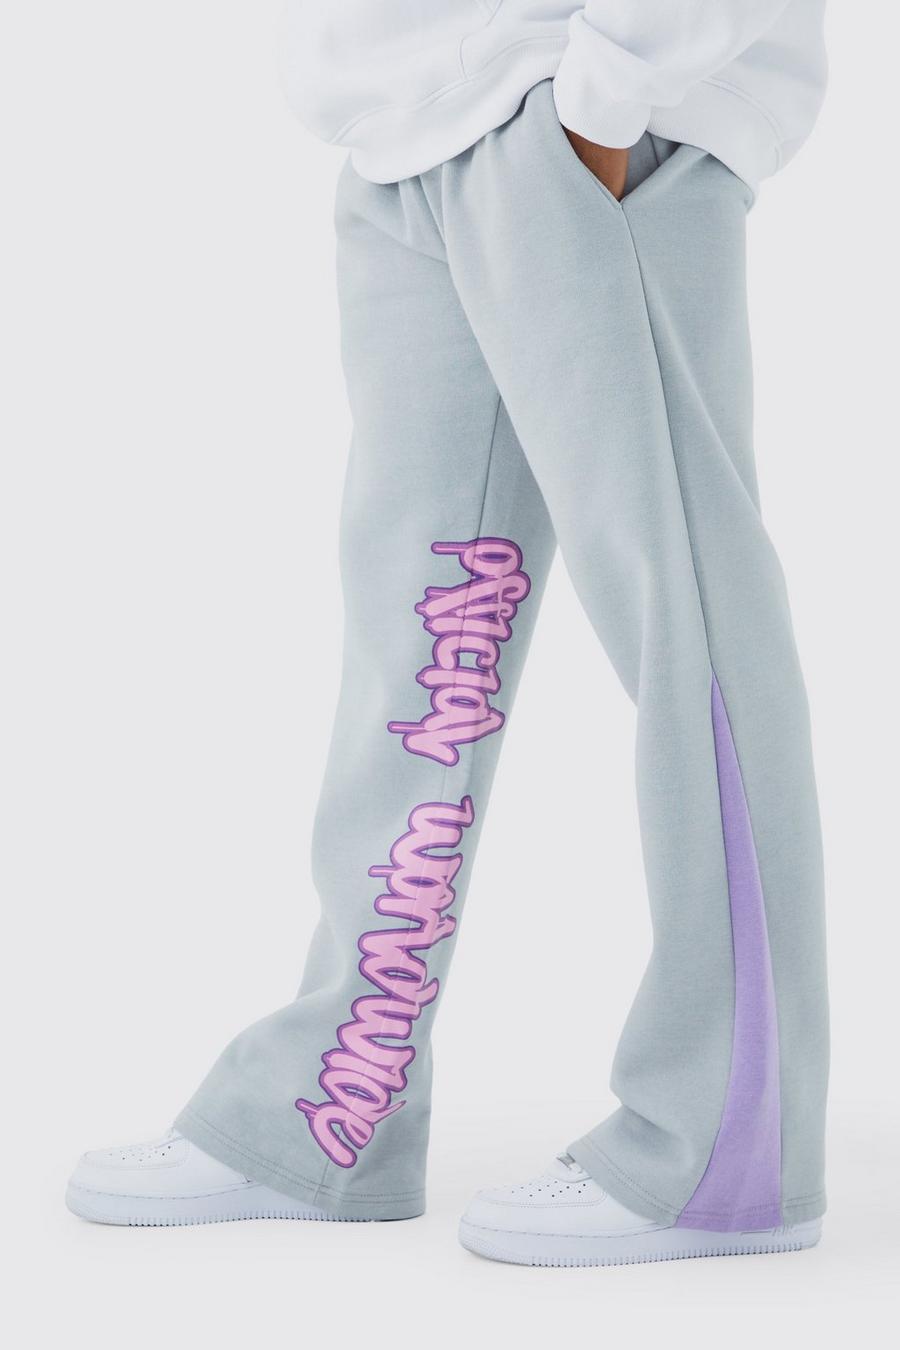 Pantaloni tuta con stampa stile Graffiti, inserti e pannelli, Light grey grigio